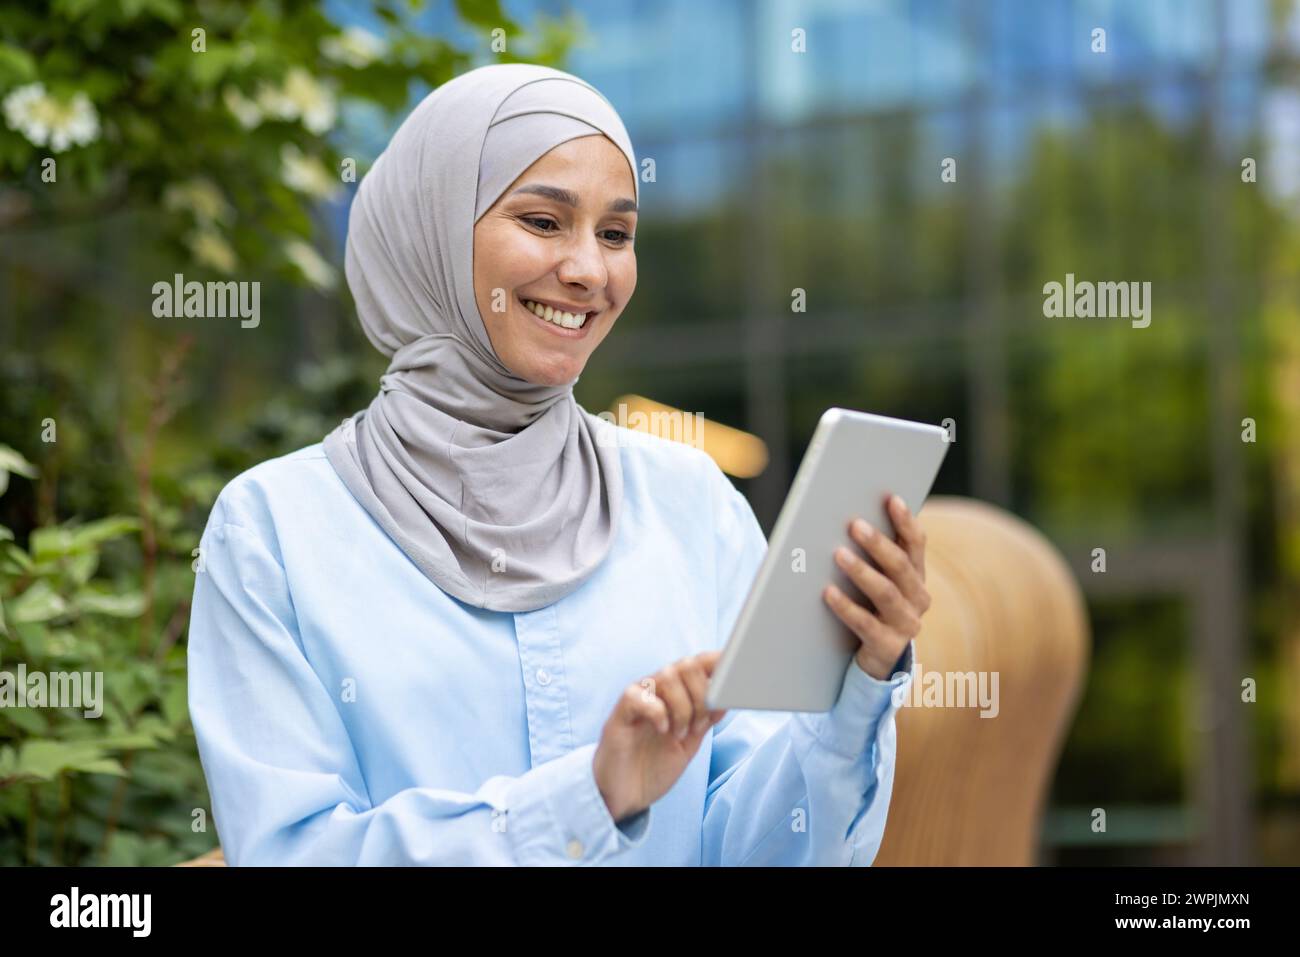 Femme musulmane heureuse professionnelle avec hijab tenant une tablette, profitant de la technologie en dehors d'un cadre de bureau moderne. Banque D'Images